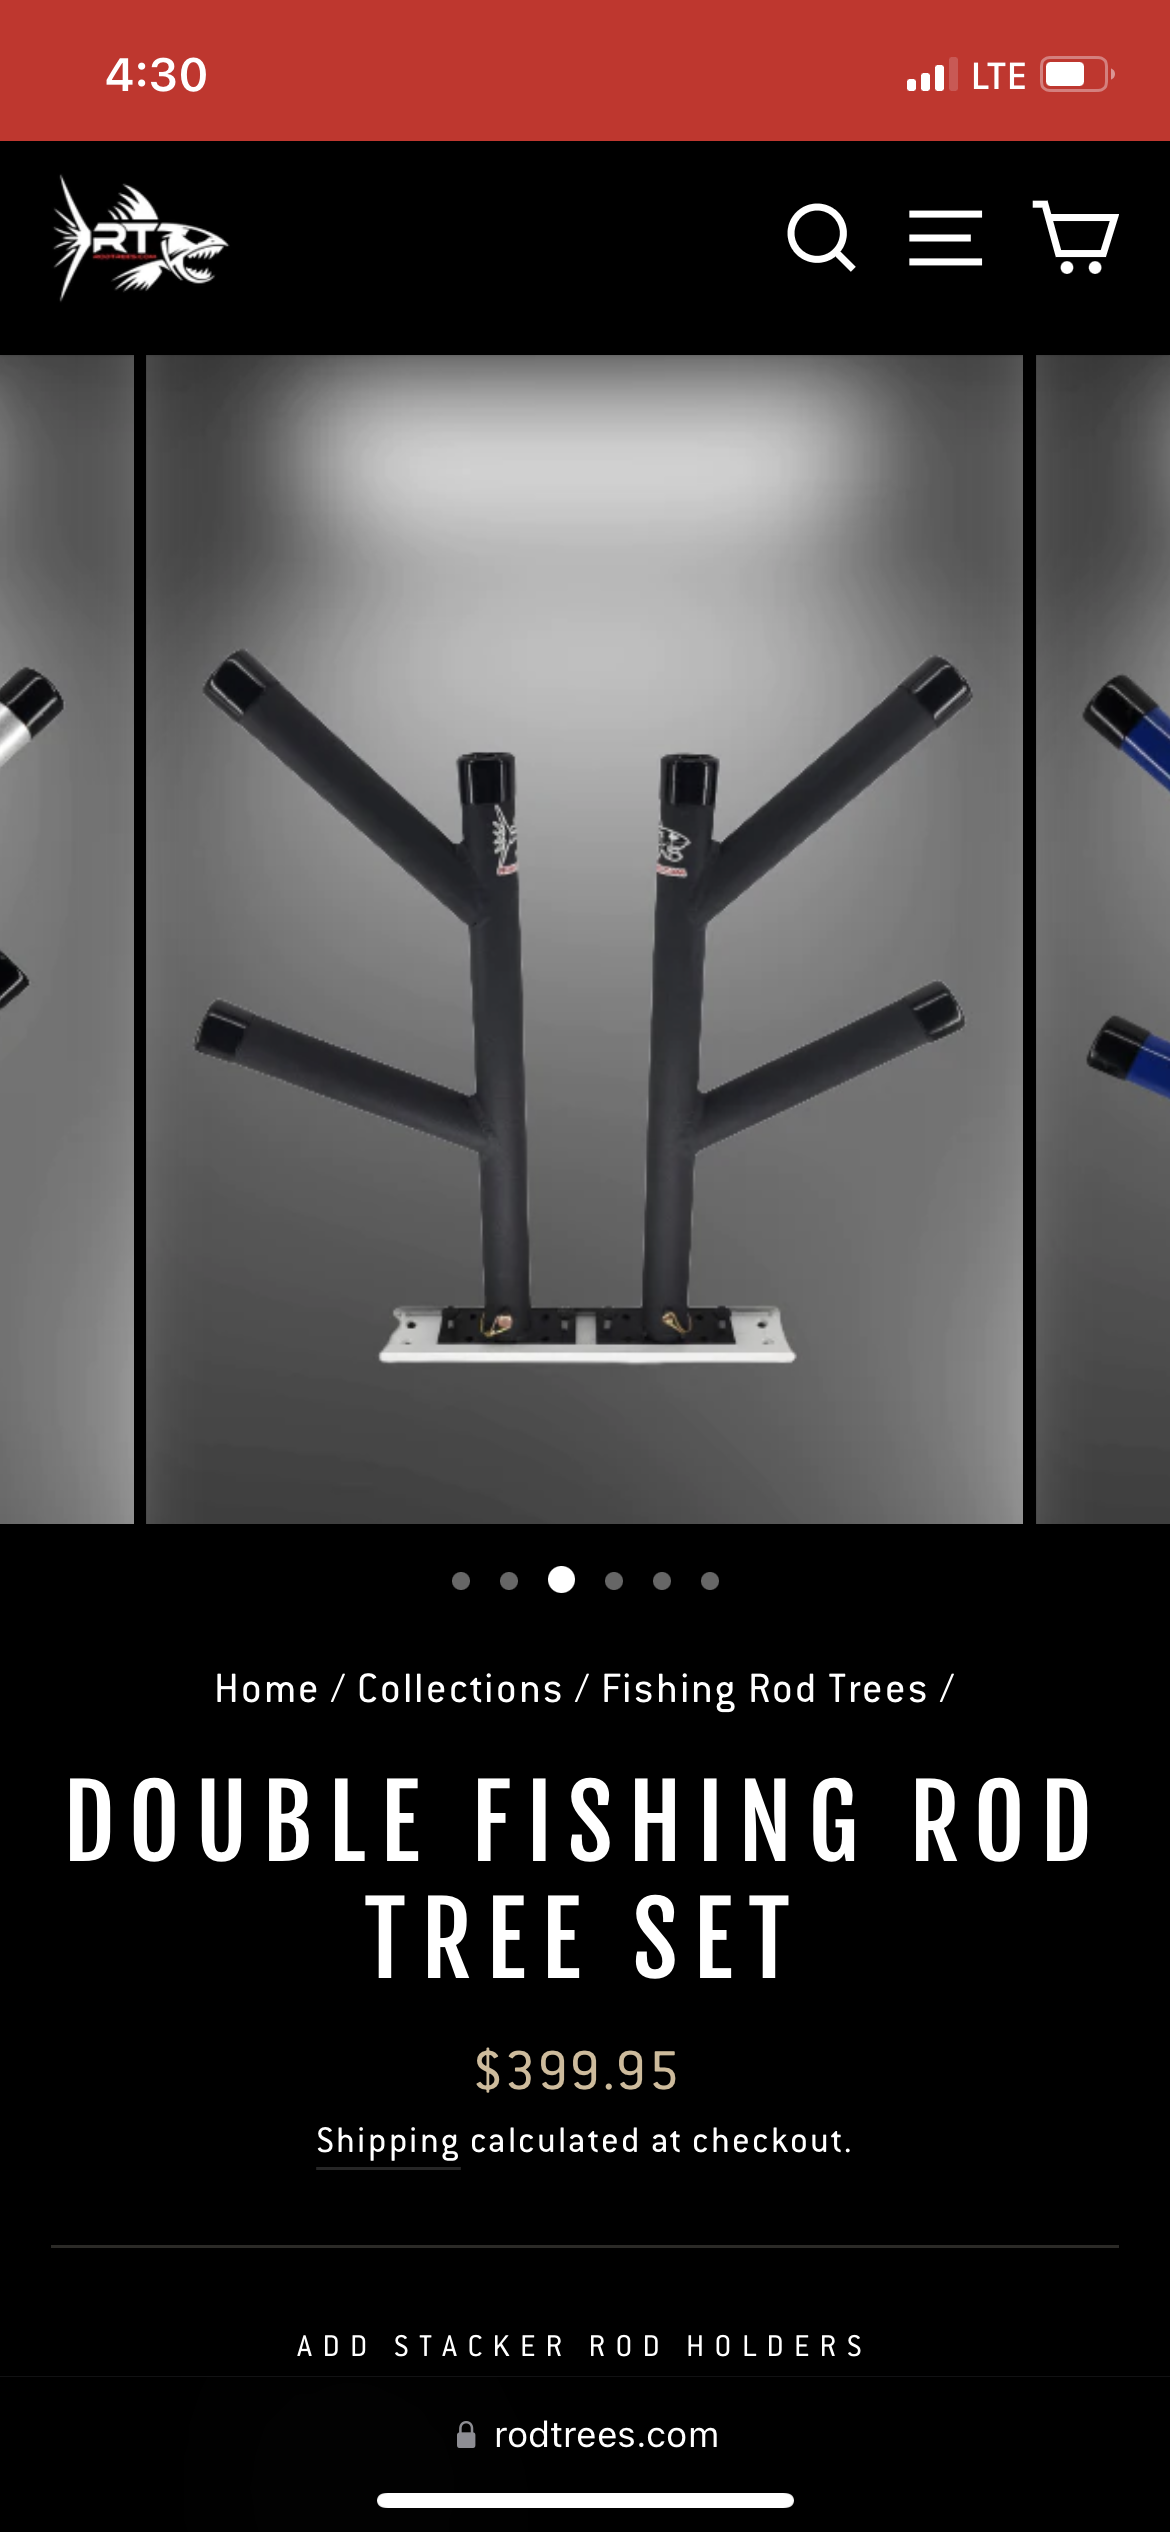 Cheap RodTrees.com Fishing Rod Trees Double Fishing Rod Tree Set